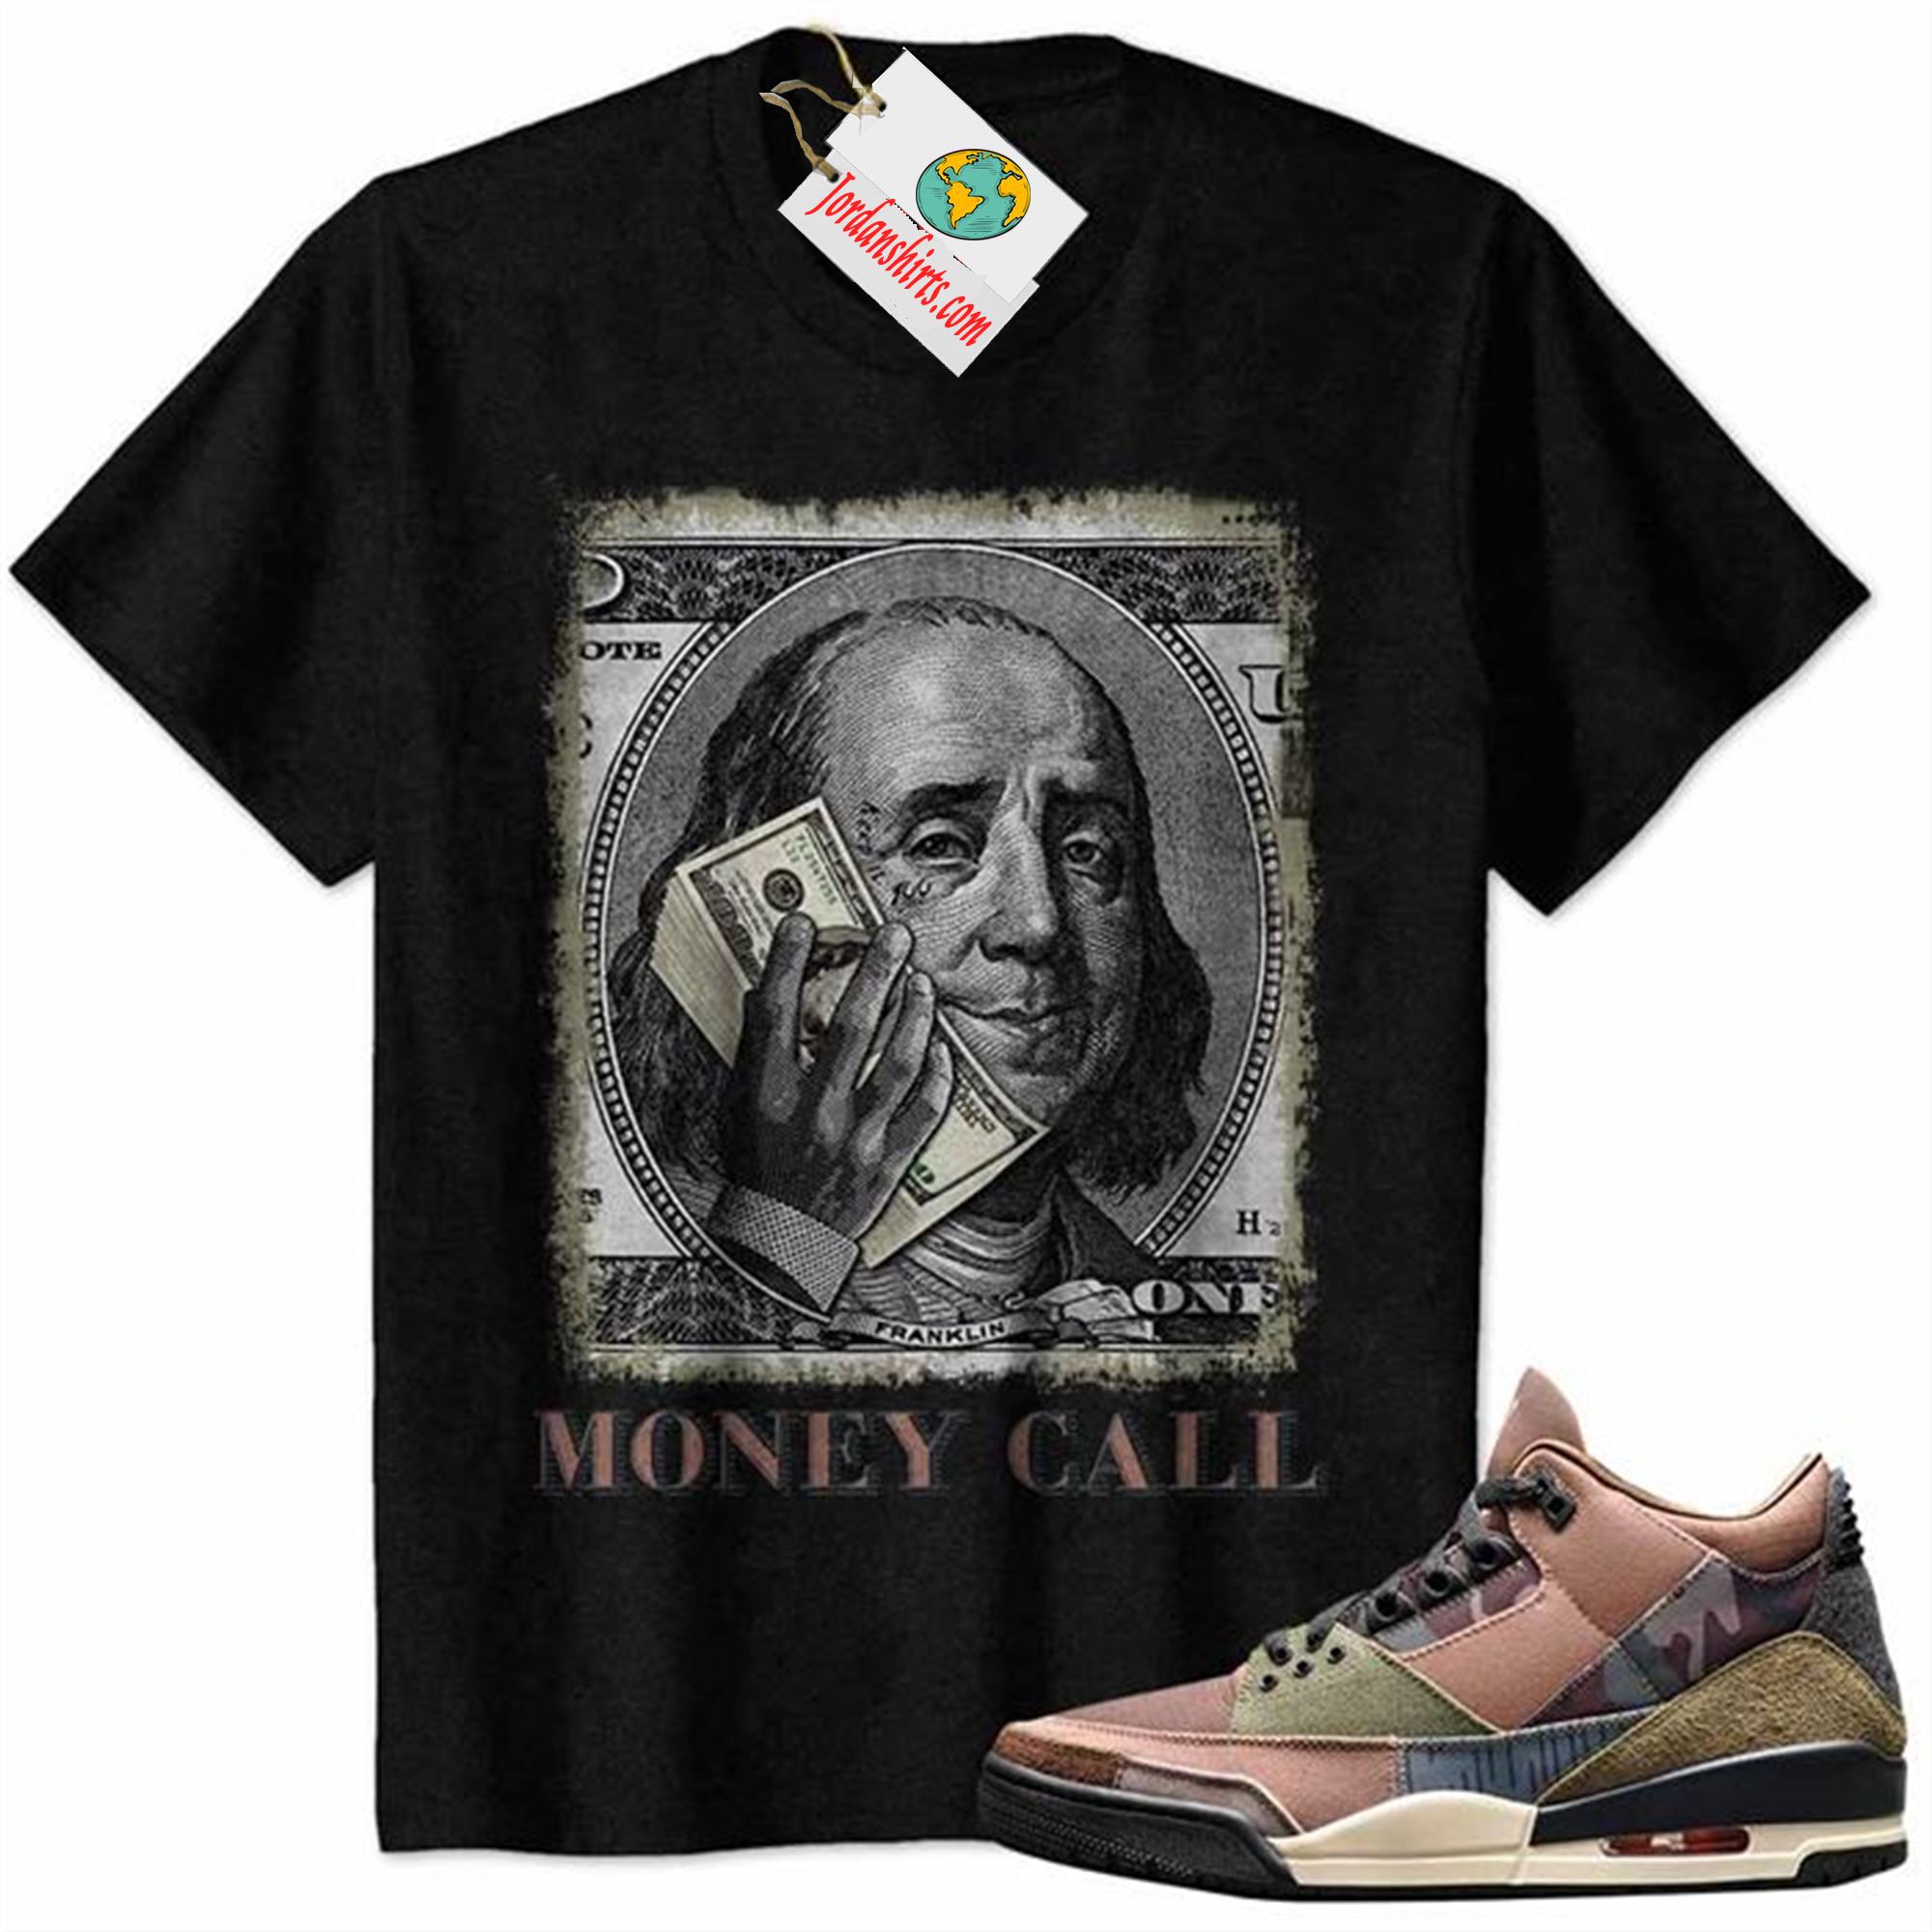 Jordan 3 Shirt, Money Call Calling Benjamin Franklin Black Air Jordan 3 Camo 3s Plus Size Up To 5xl